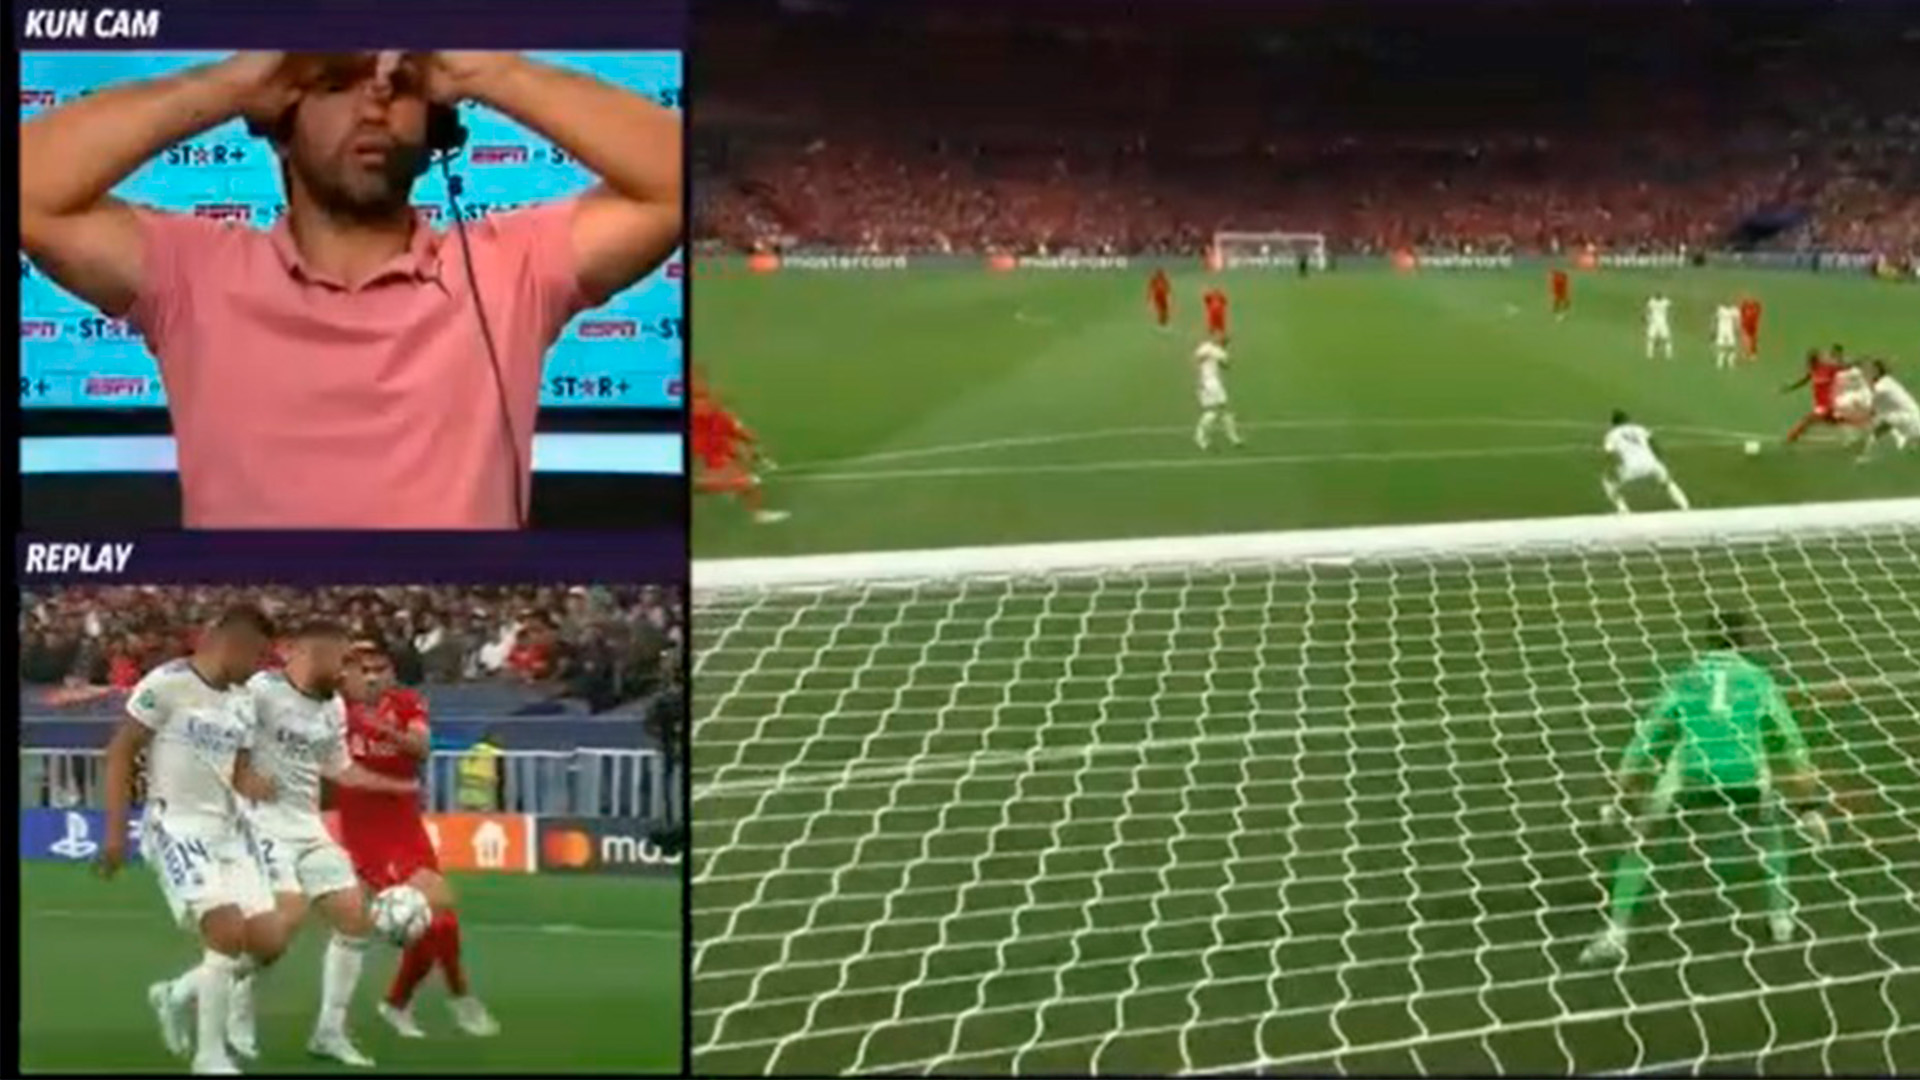 Las imperdibles reacciones del Kun Agüero en la final de la Champions League y su bronca contra el Real Madrid